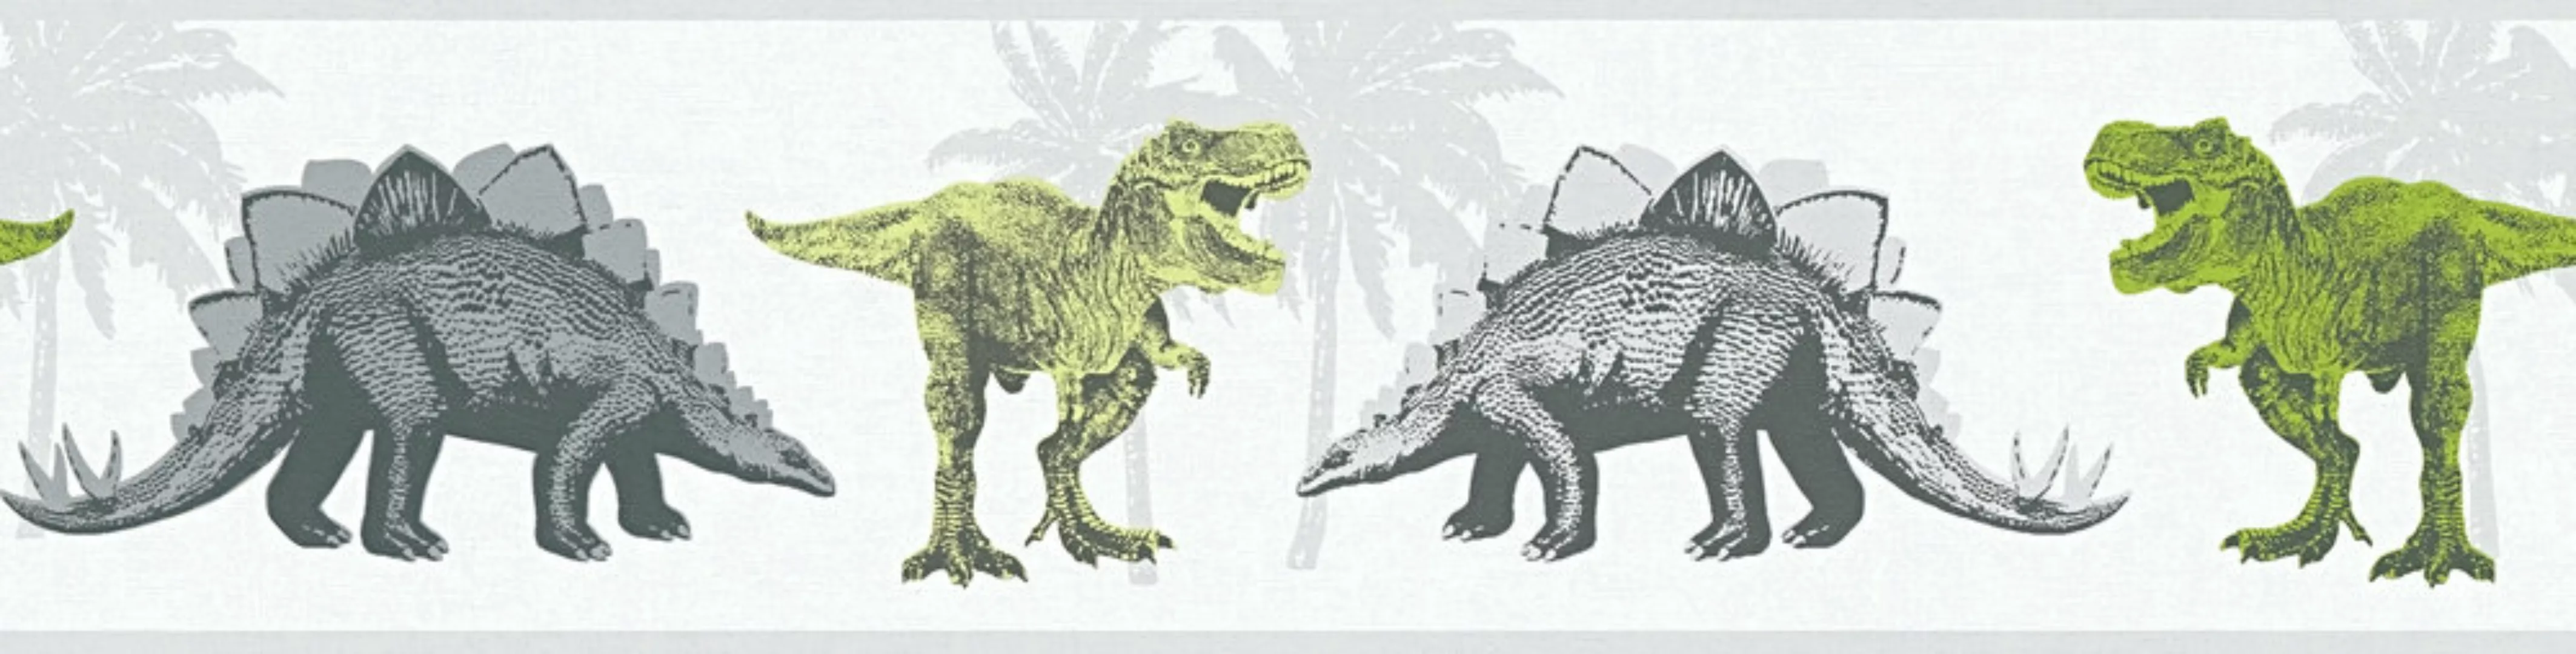 Bricoflor Dino Tapete als Bordüre Kinderzimmer Tapetenbordüre mit Dinosauri günstig online kaufen